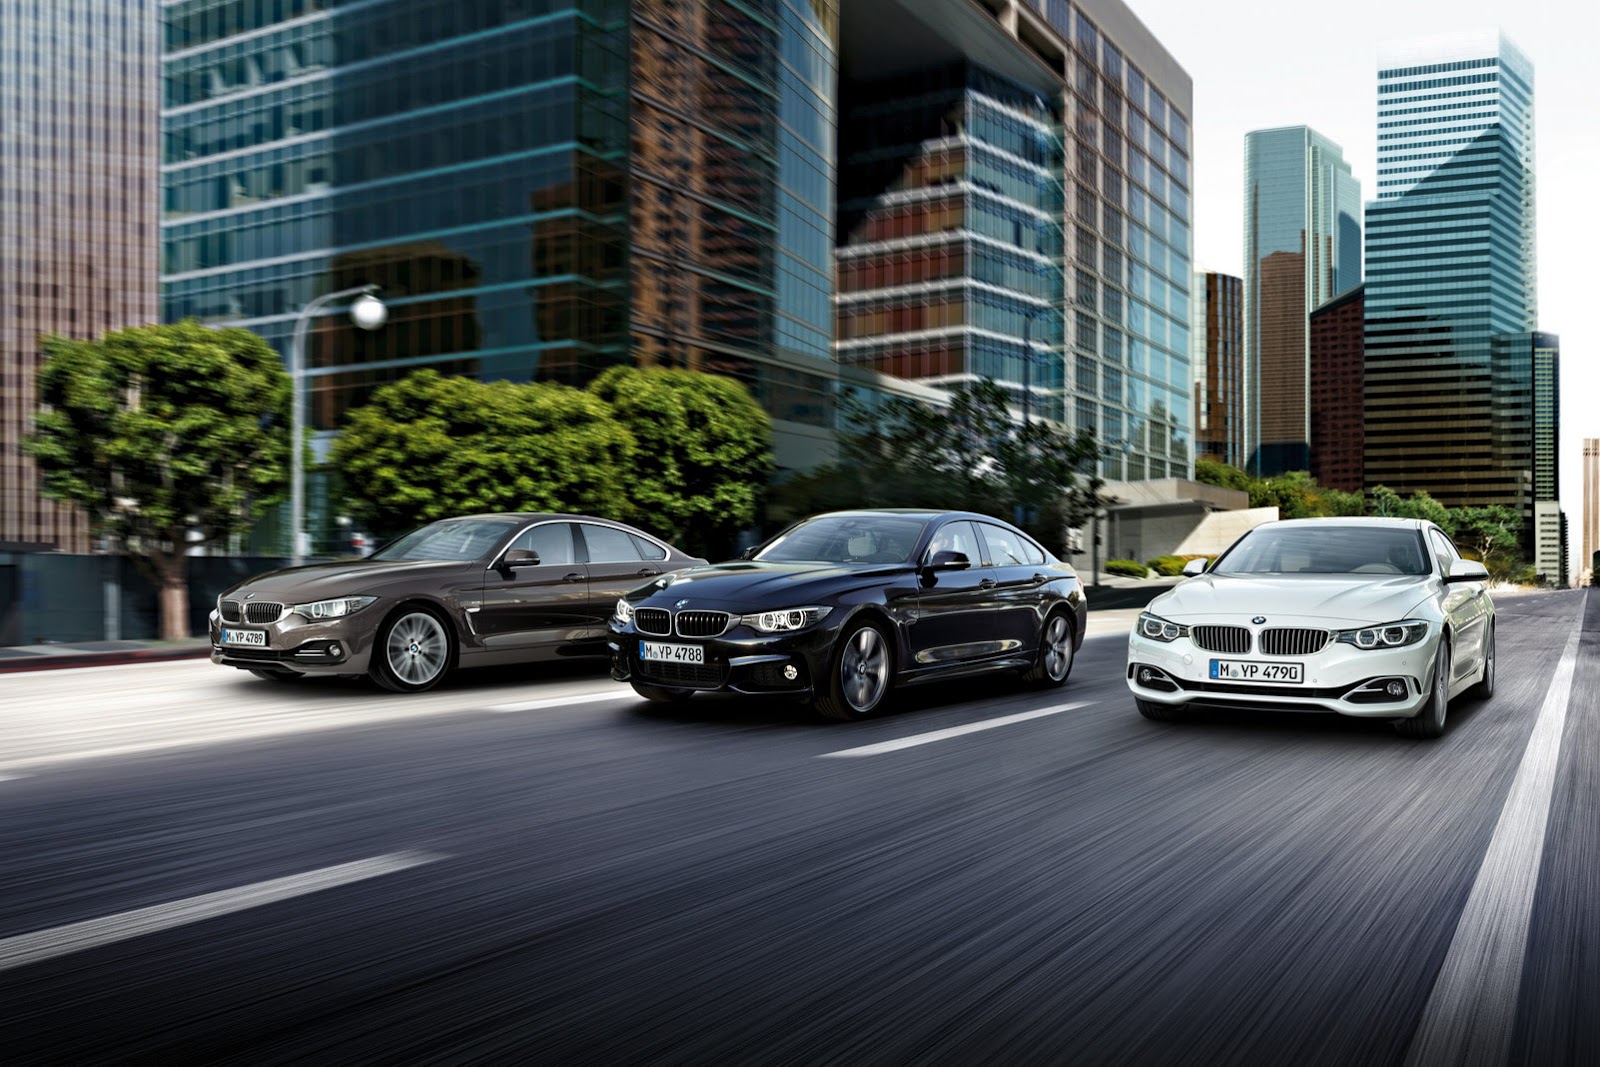 "بالفيديو" بي إم دبليو تكشف رسميا عن اخر سياراتها غران كوبيه الفئة الرابعة 2015 BMW 4 Series Gran Coupe 1